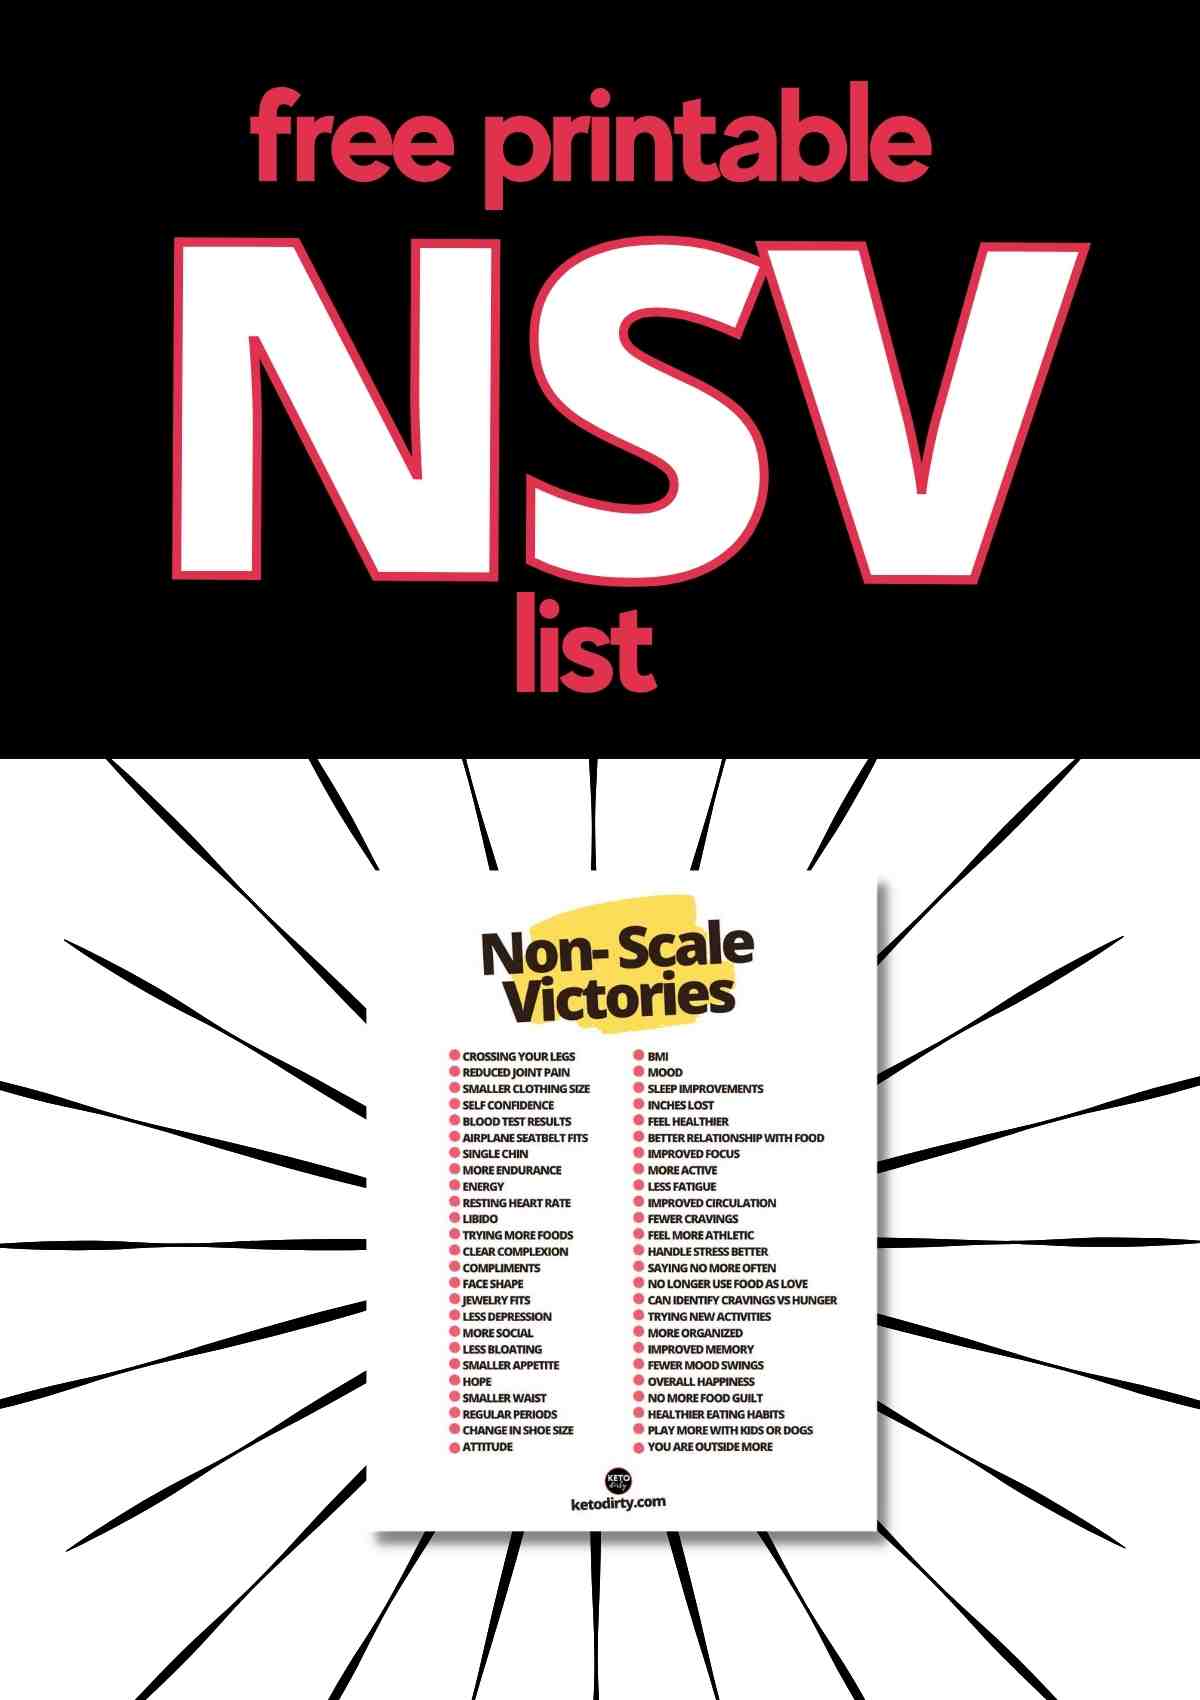 non scale victories list pdf